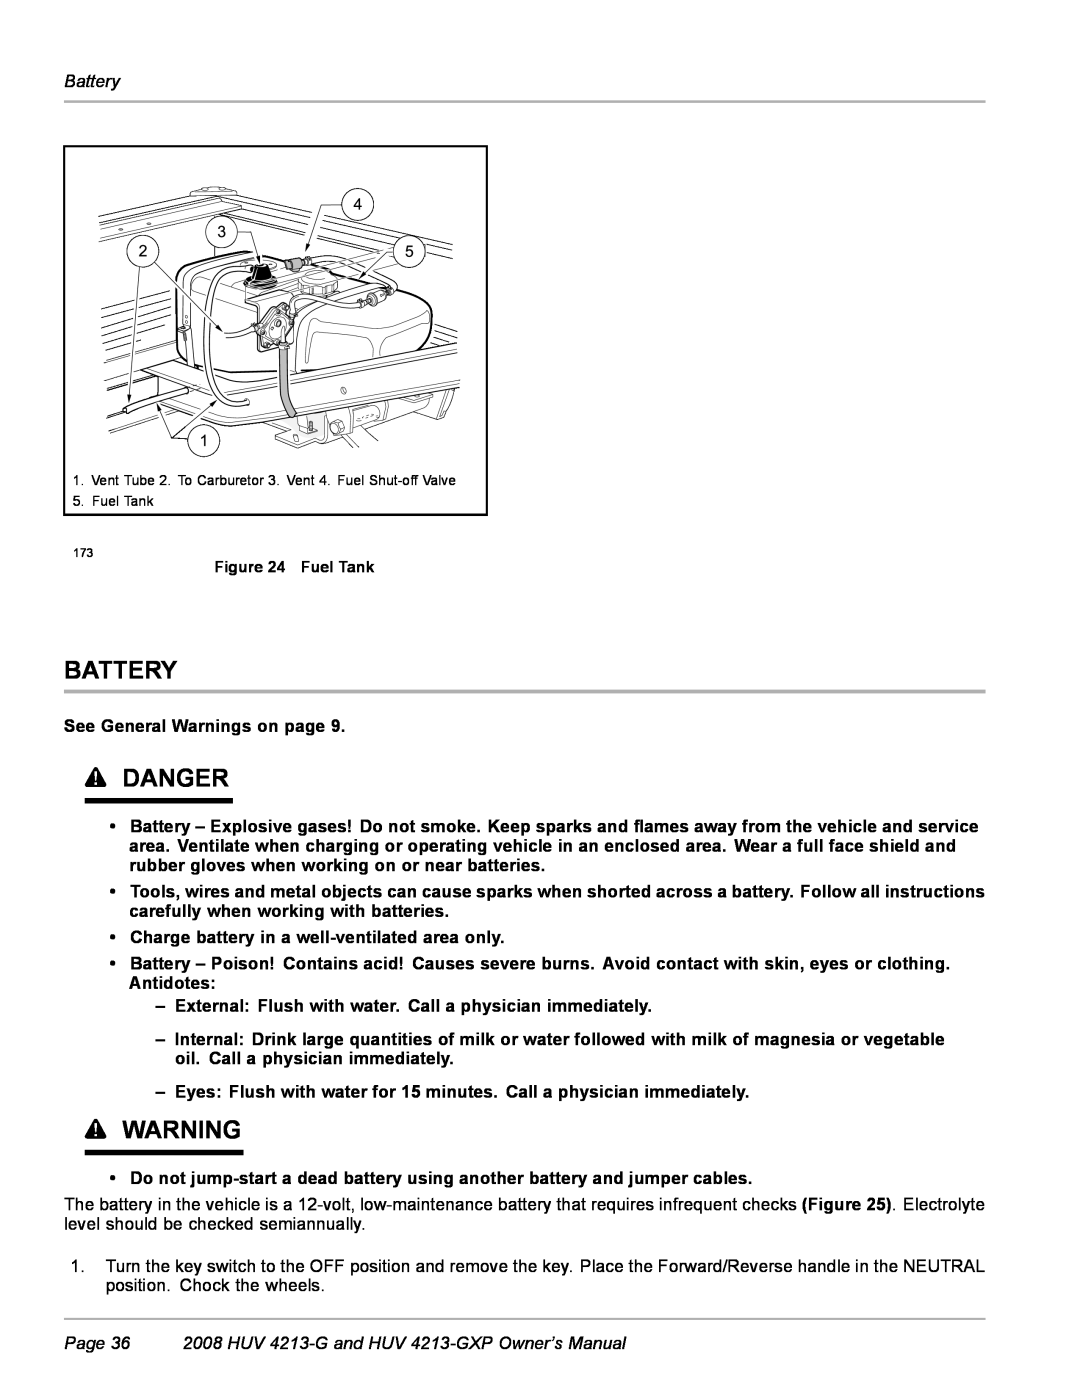 Husqvarna HUV 4213-GXP owner manual Battery, Danger 